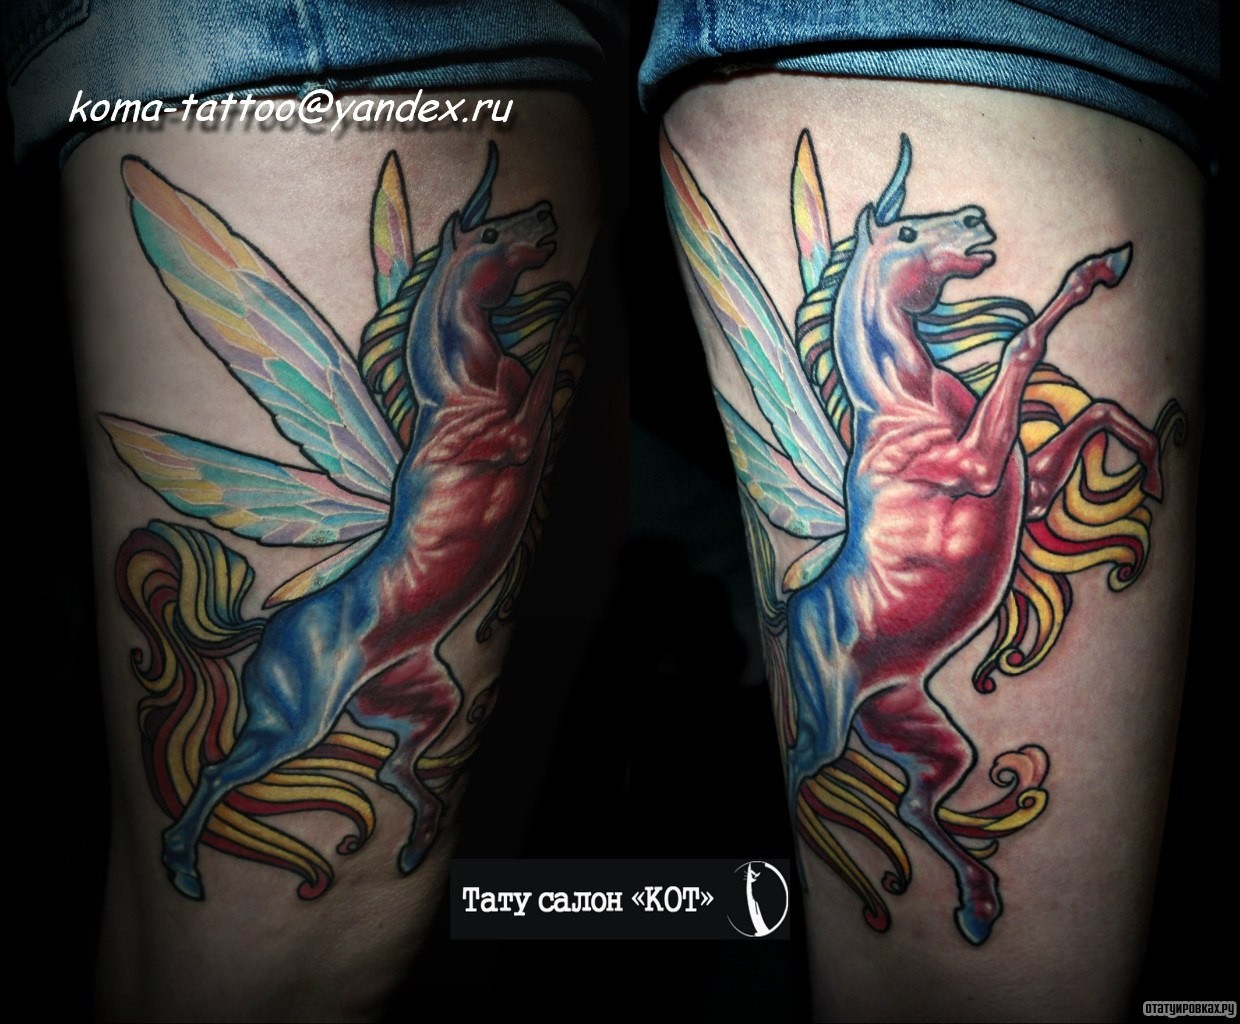 Фотография татуировки под названием «Конь с крыльями стрекозы»